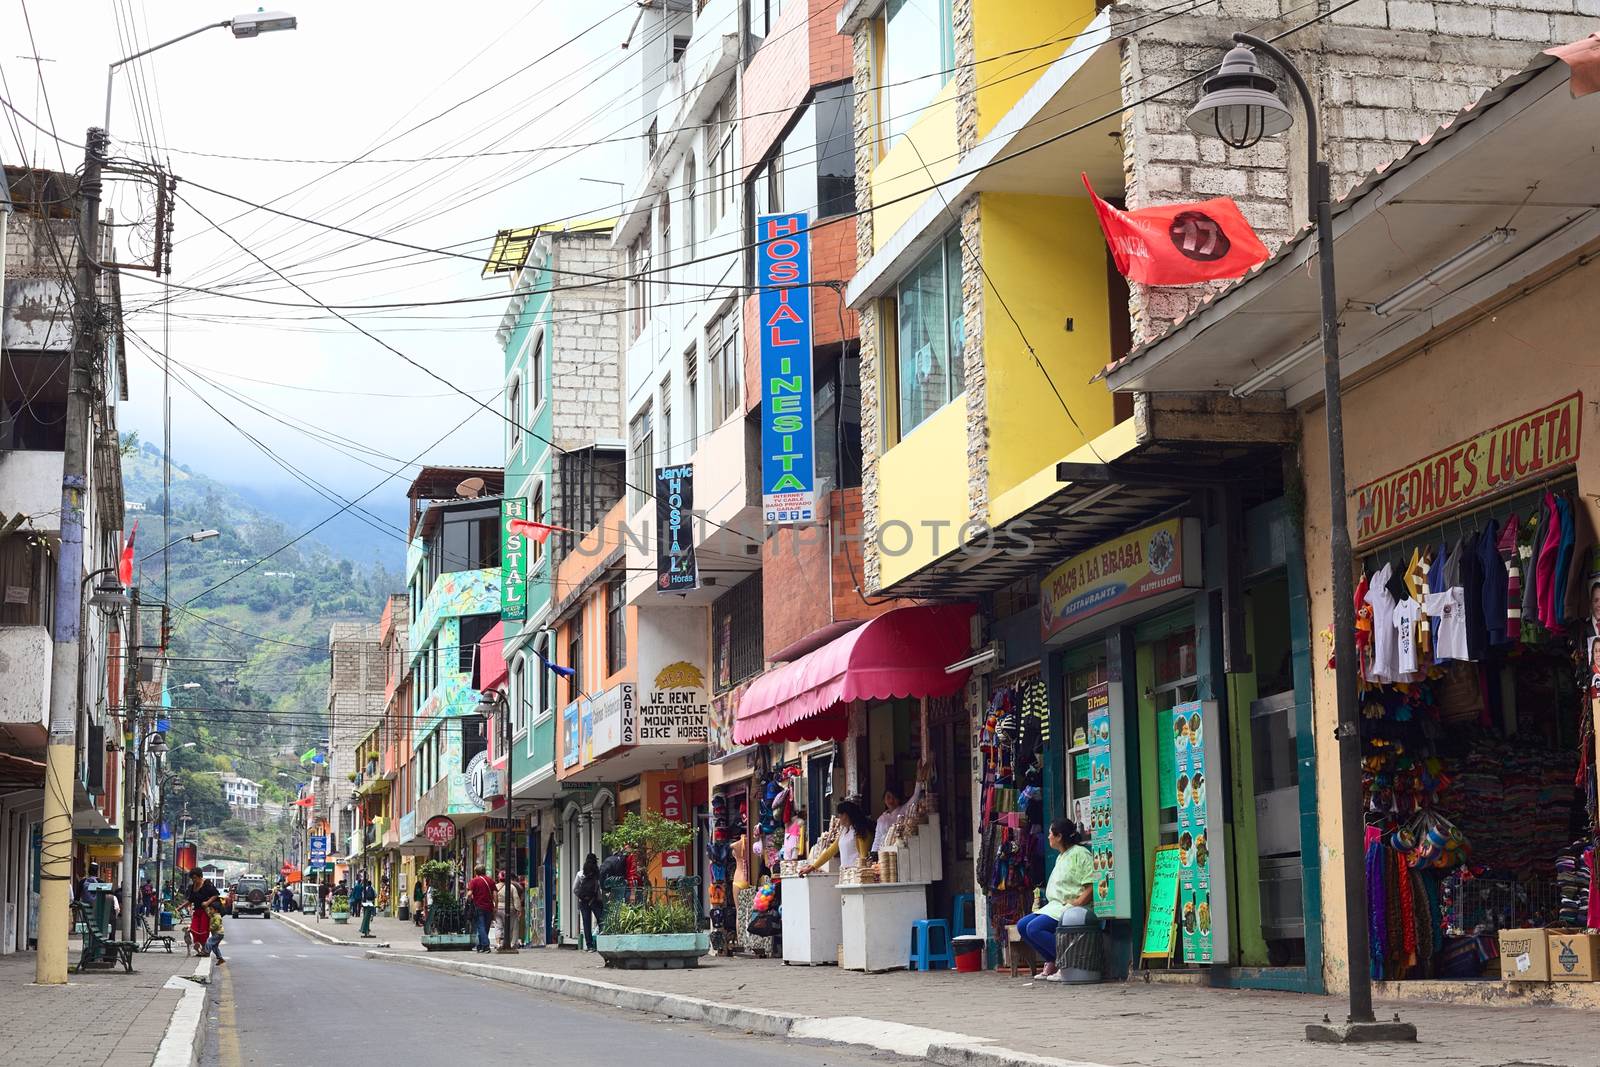 Street Maldonado in Banos, Ecuador by ildi